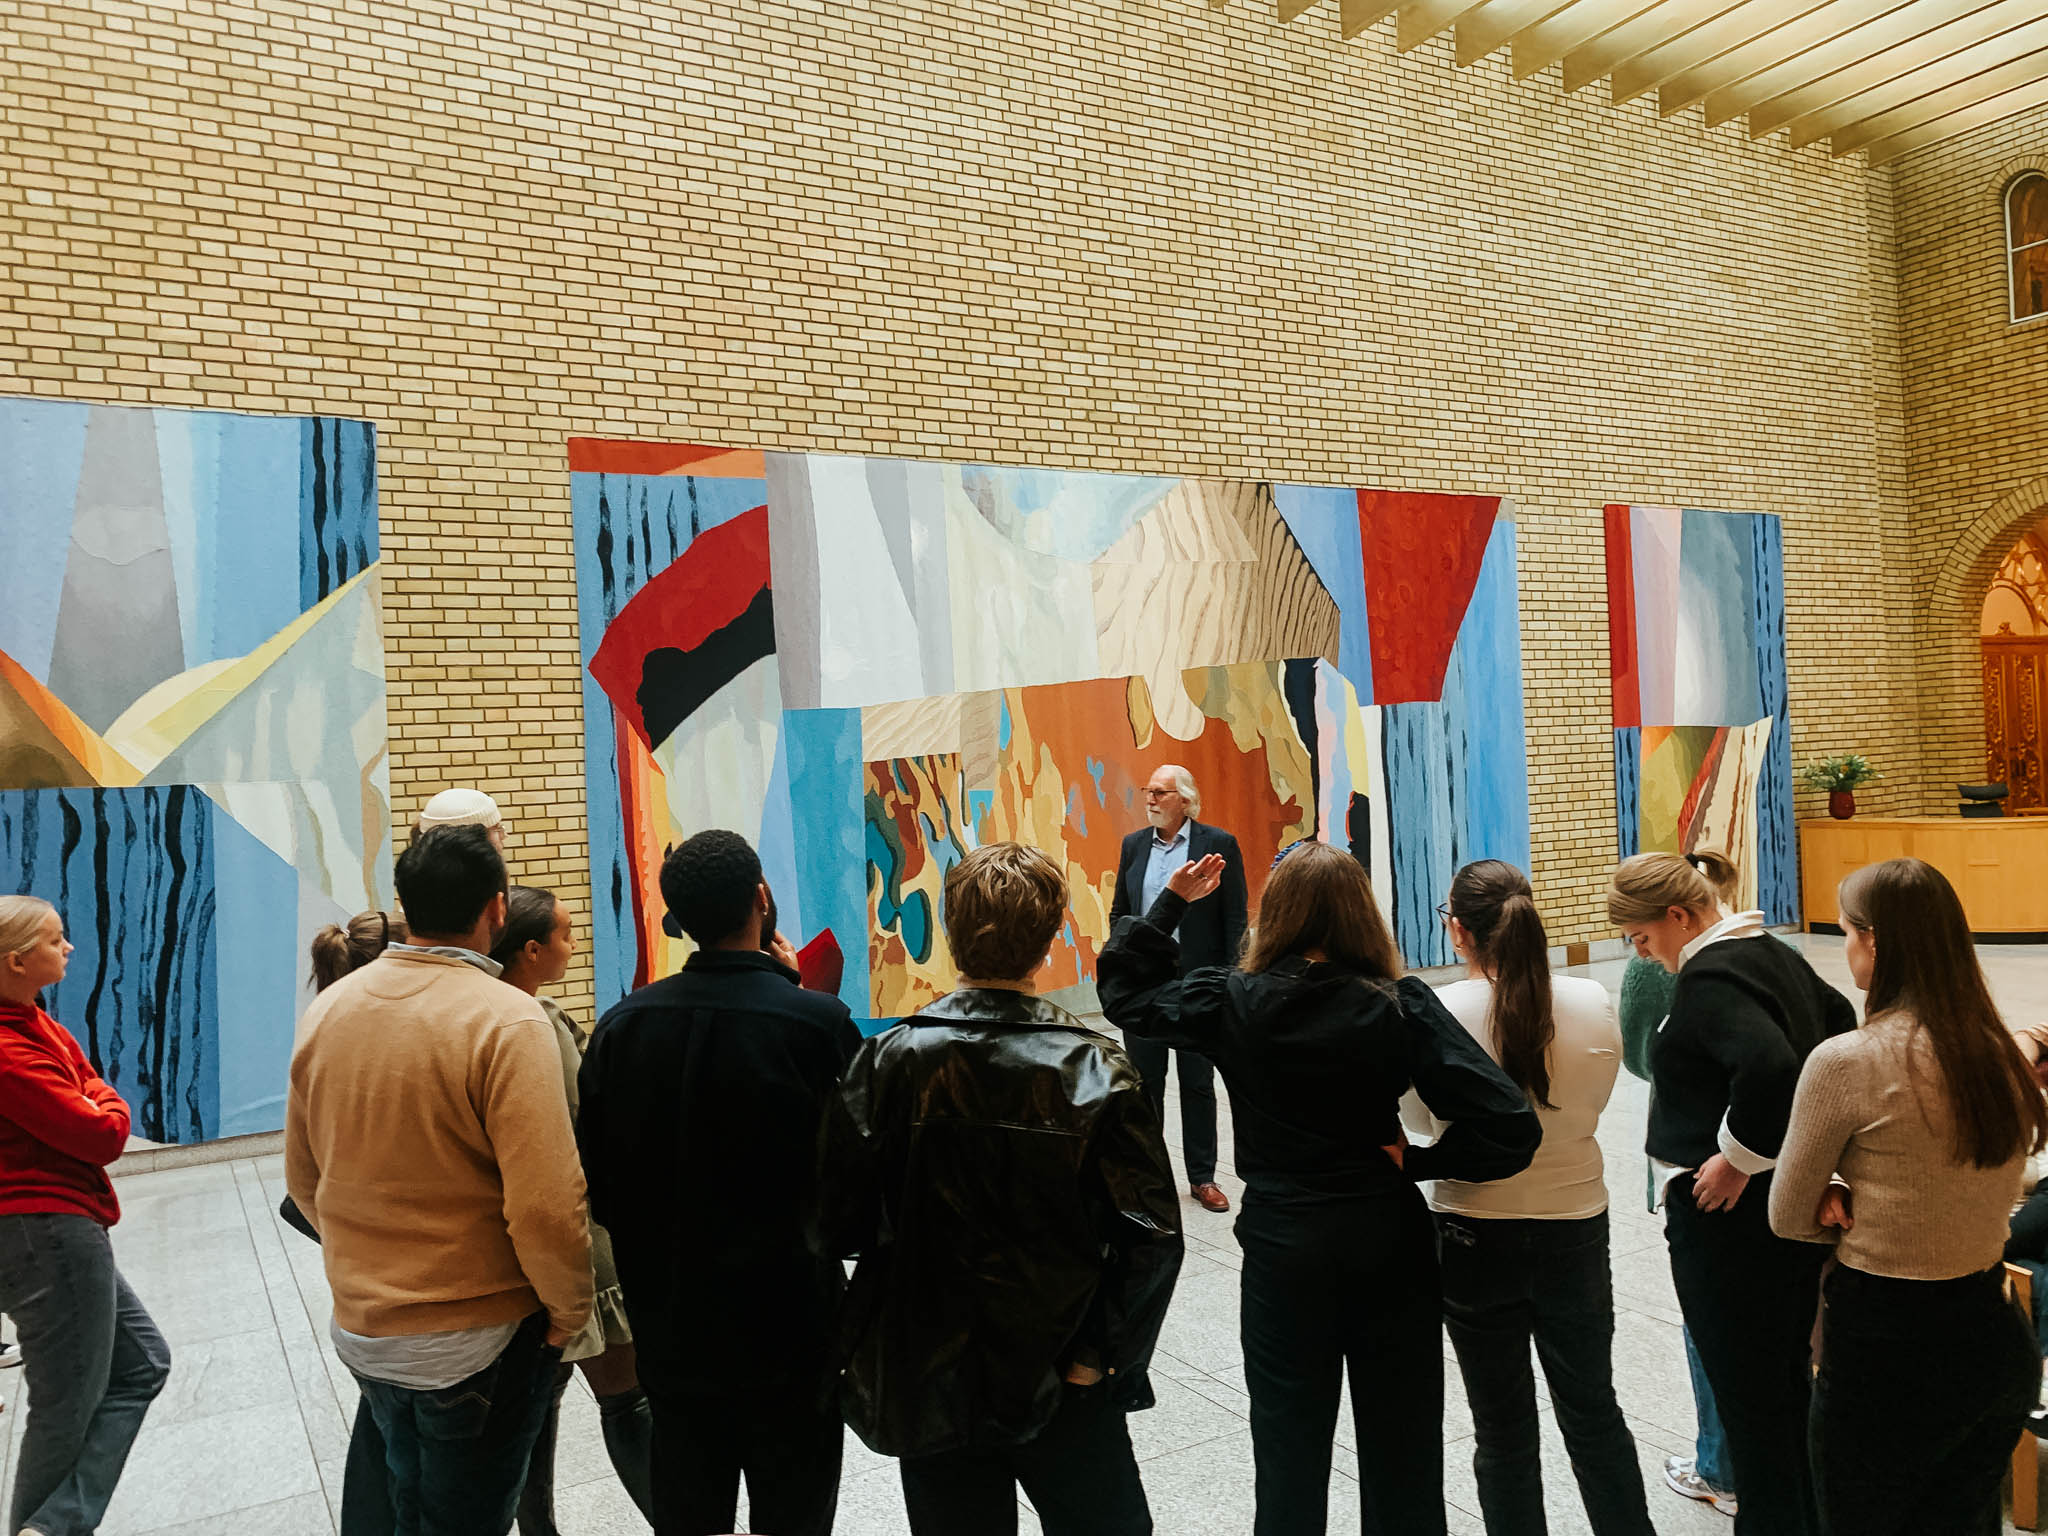 En gruppe studenter står inne på Stortinget med ryggen vendt mot kamera. De ser mot Carl Erik Grimstad som forteller om kunsten på veggene. Foto.